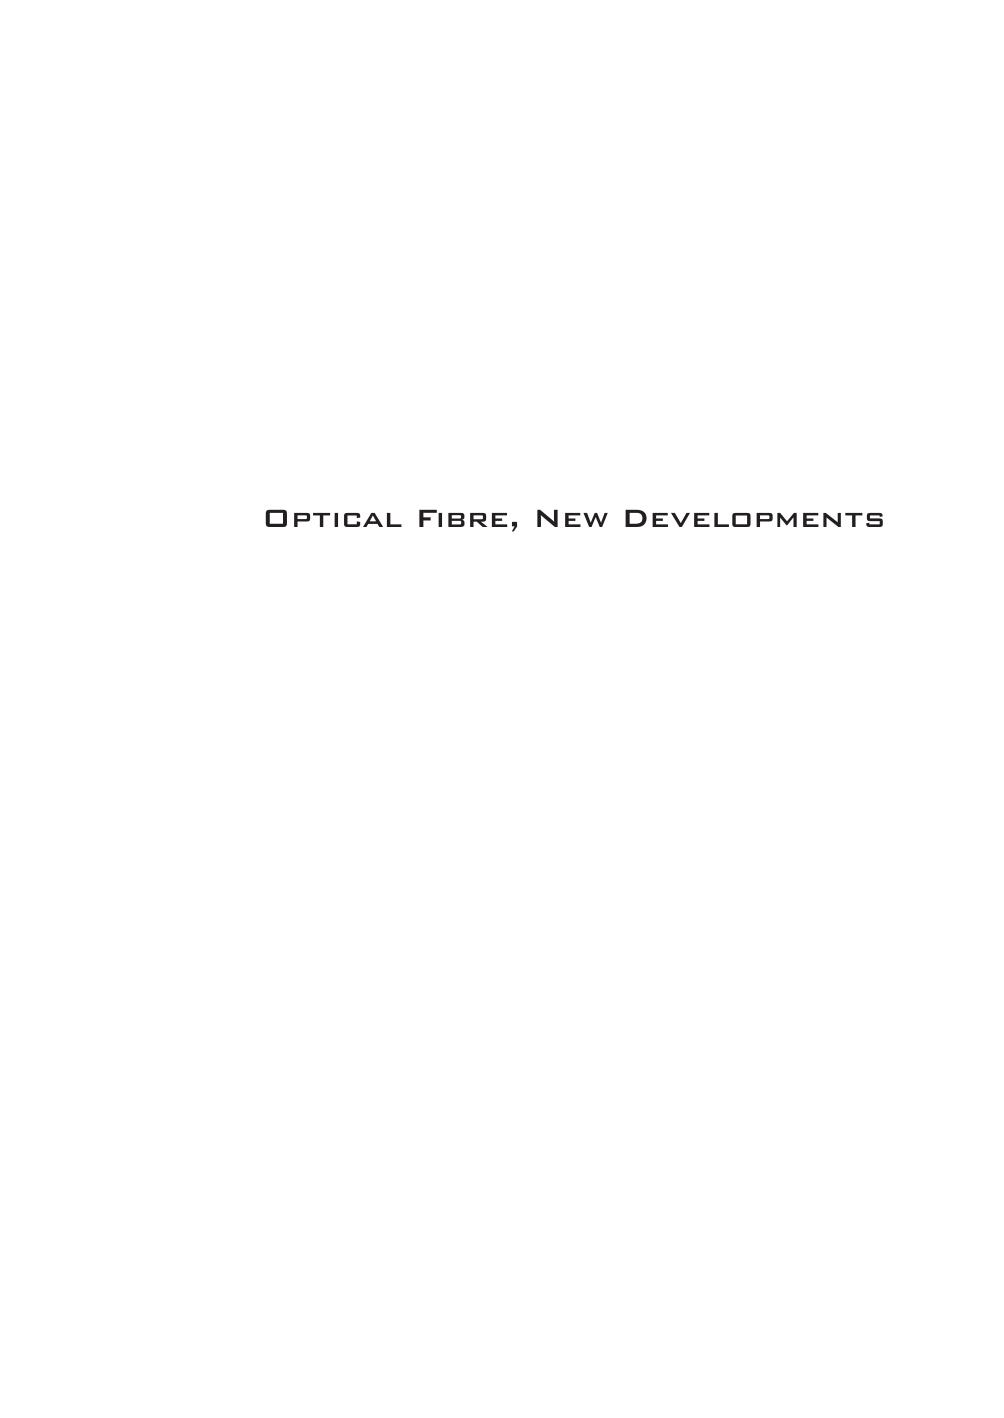 Optical Fibre, New Developments 2009.pdf